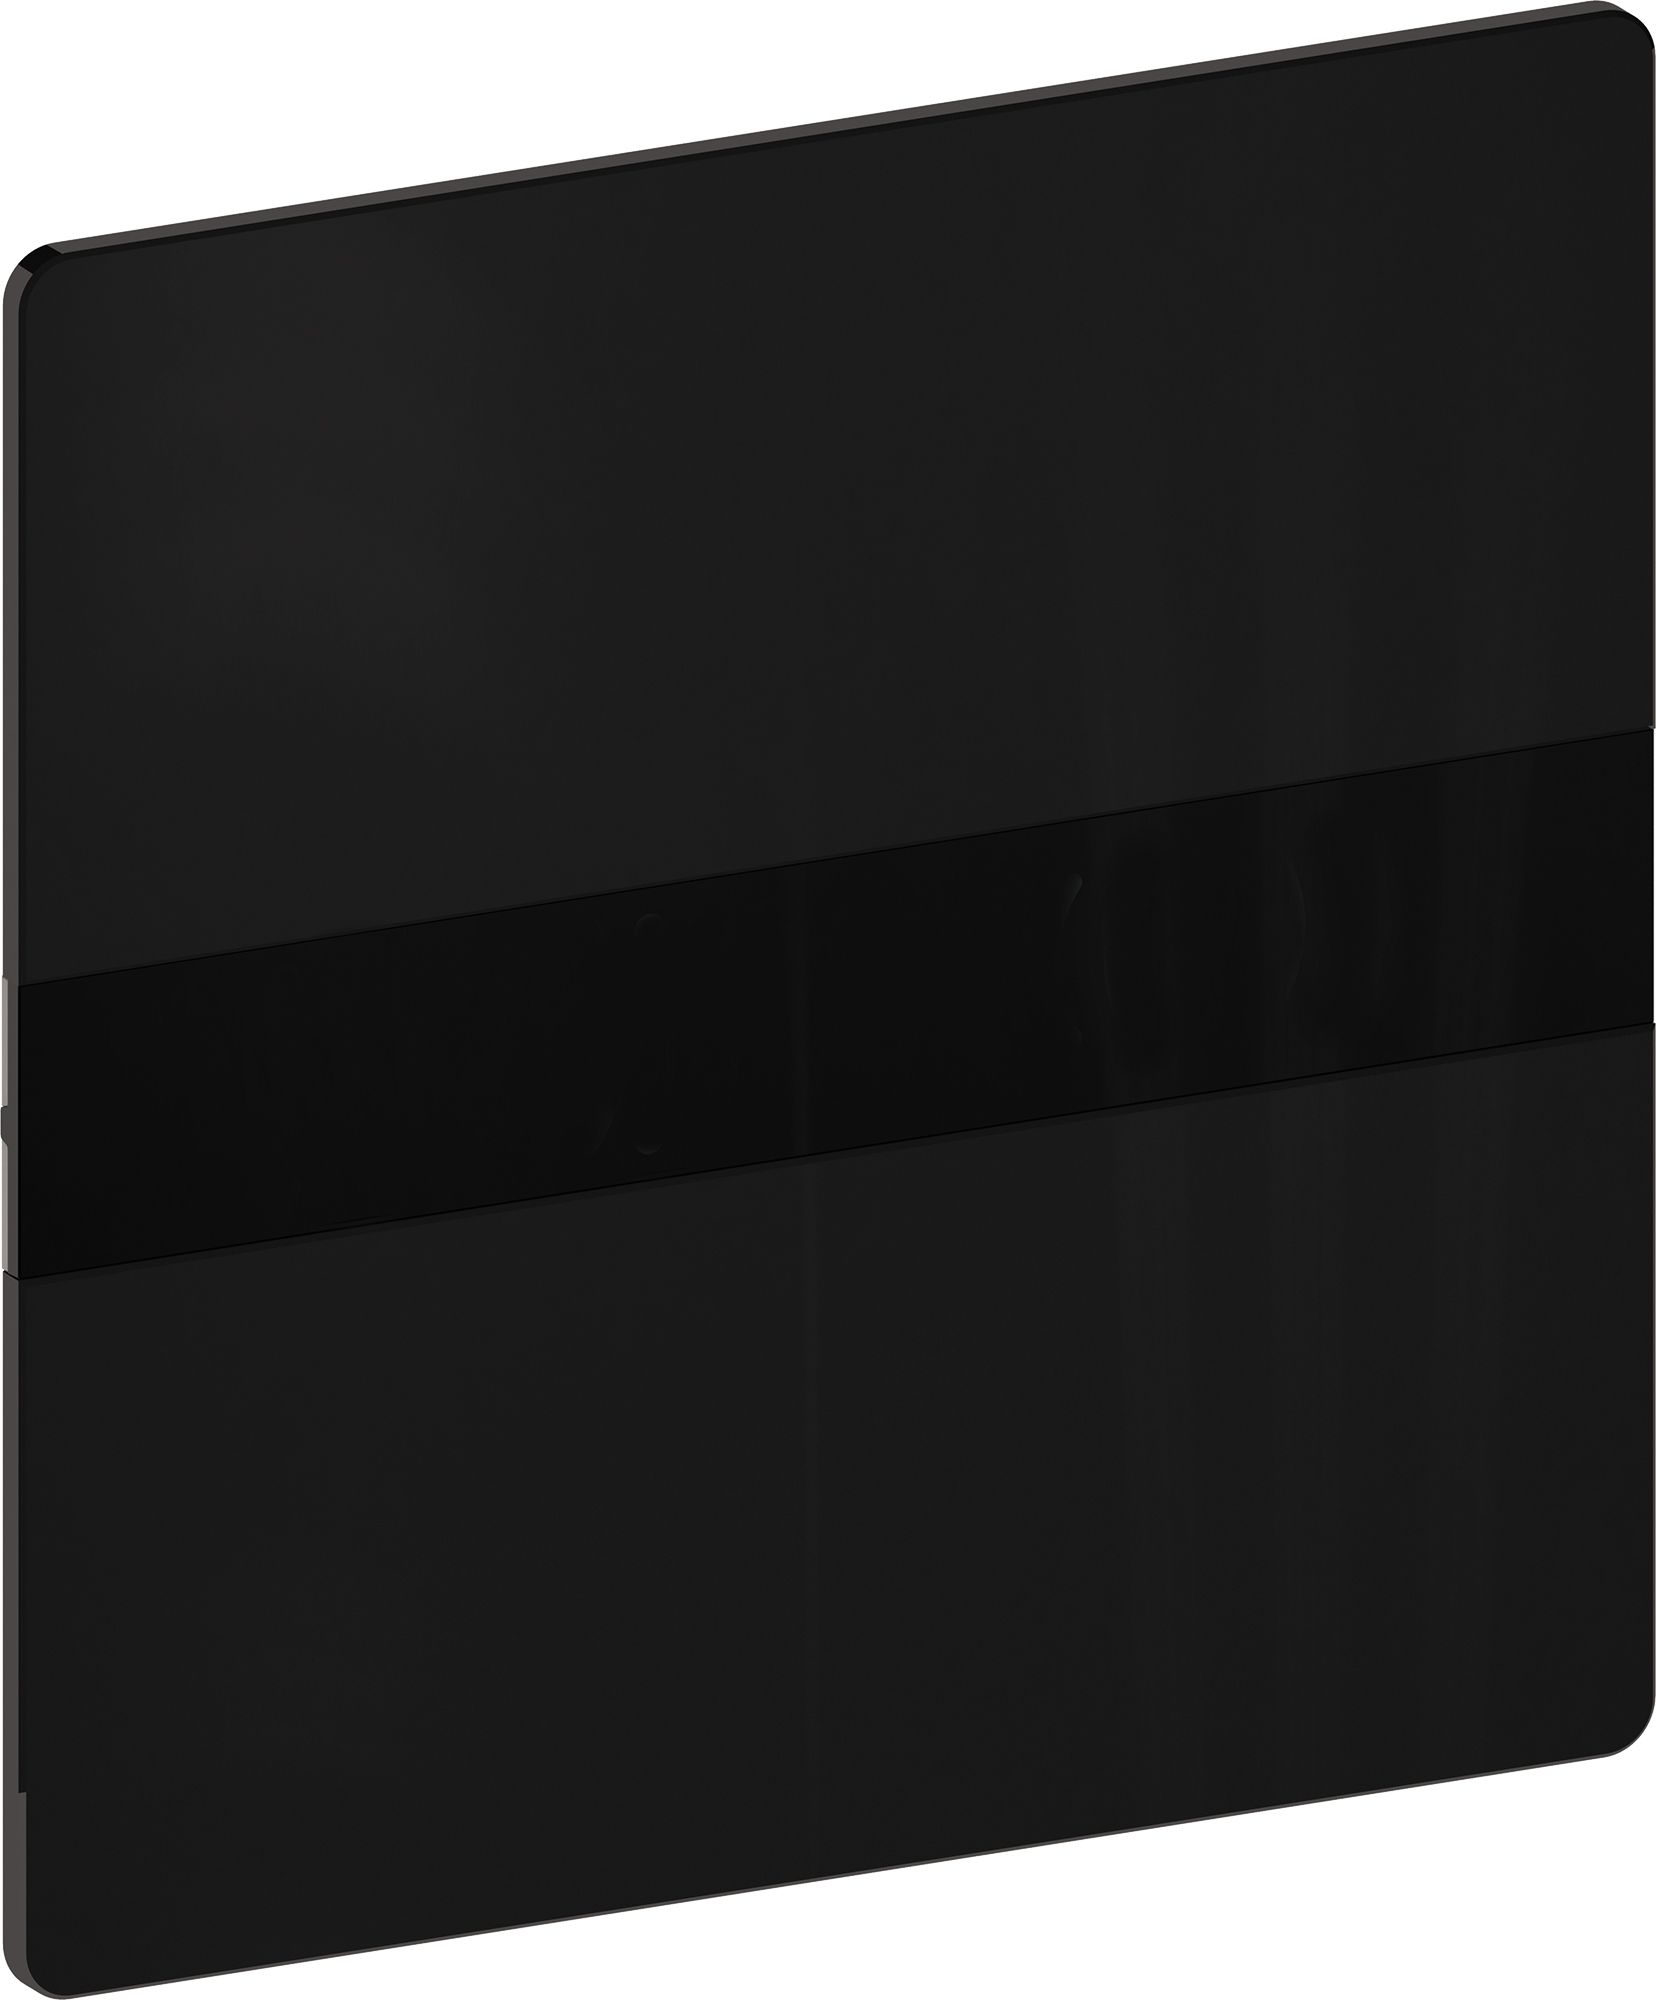 Panel de control XS Eos Glas negro DF